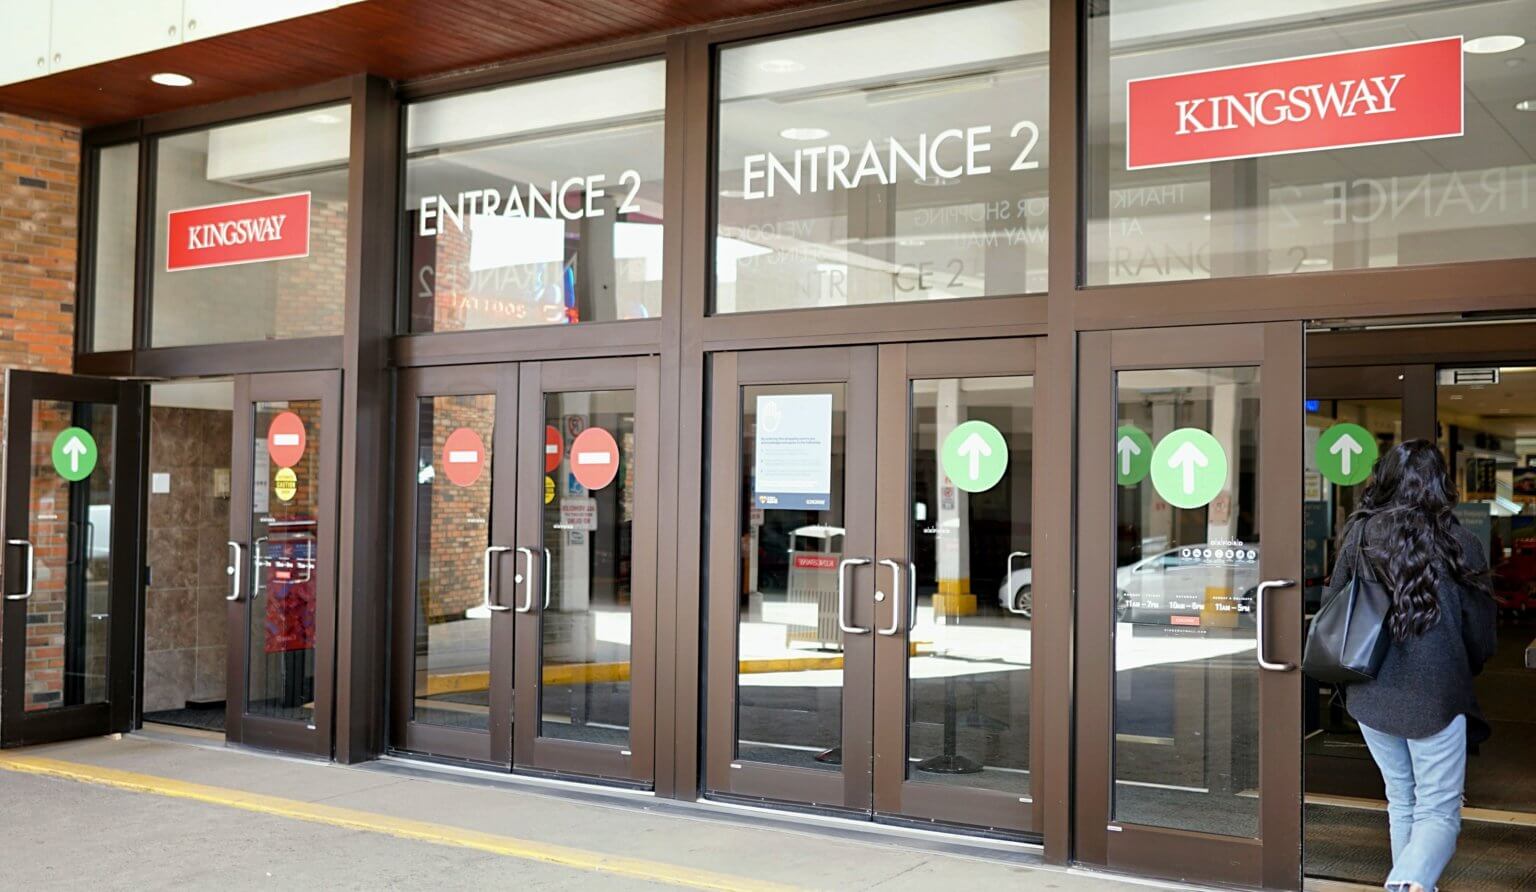 Entrance 2 - exterior doors